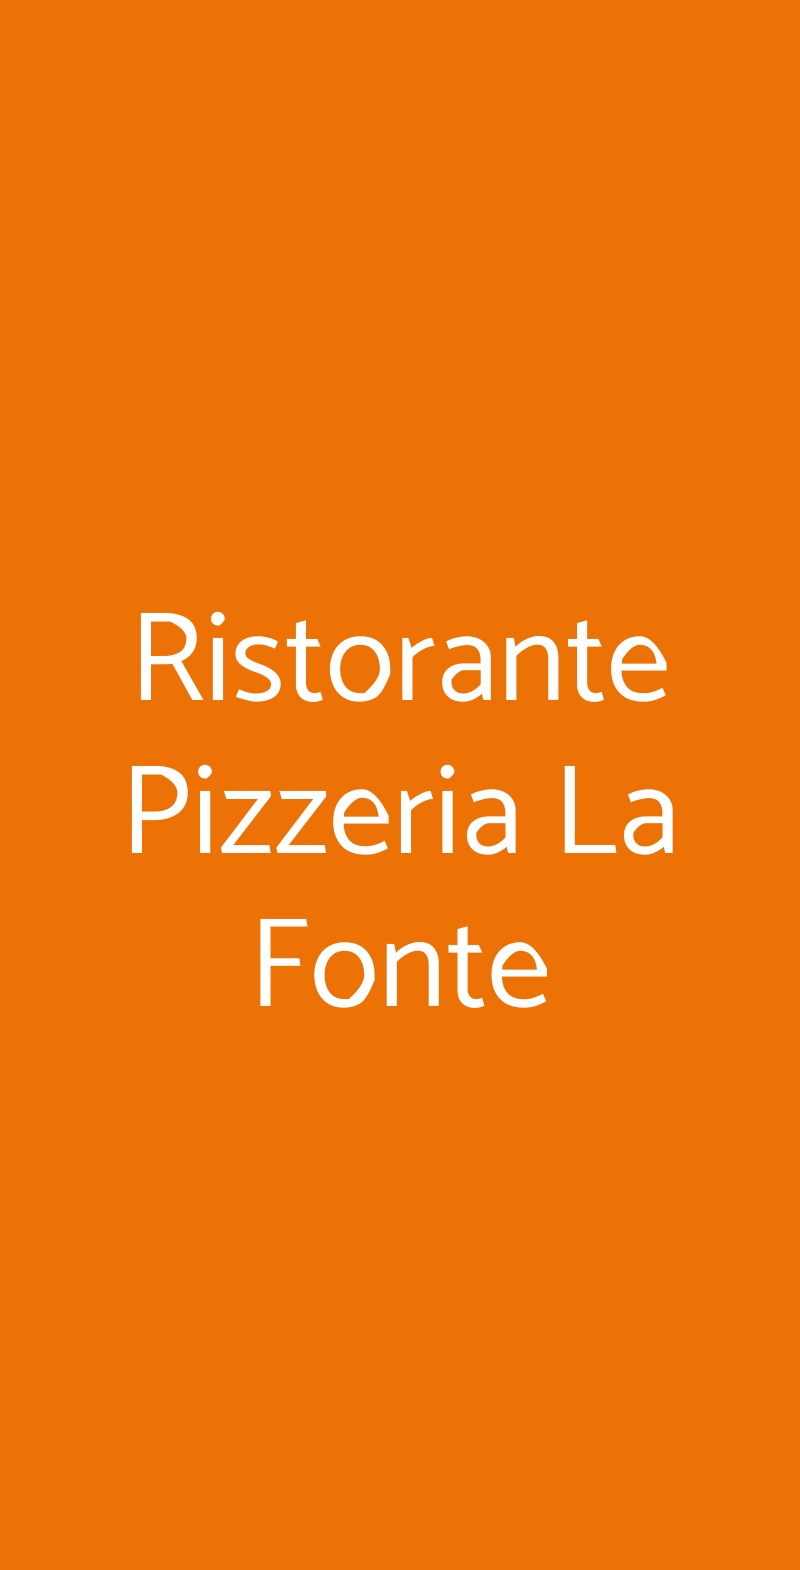 Ristorante Pizzeria La Fonte Torino menù 1 pagina